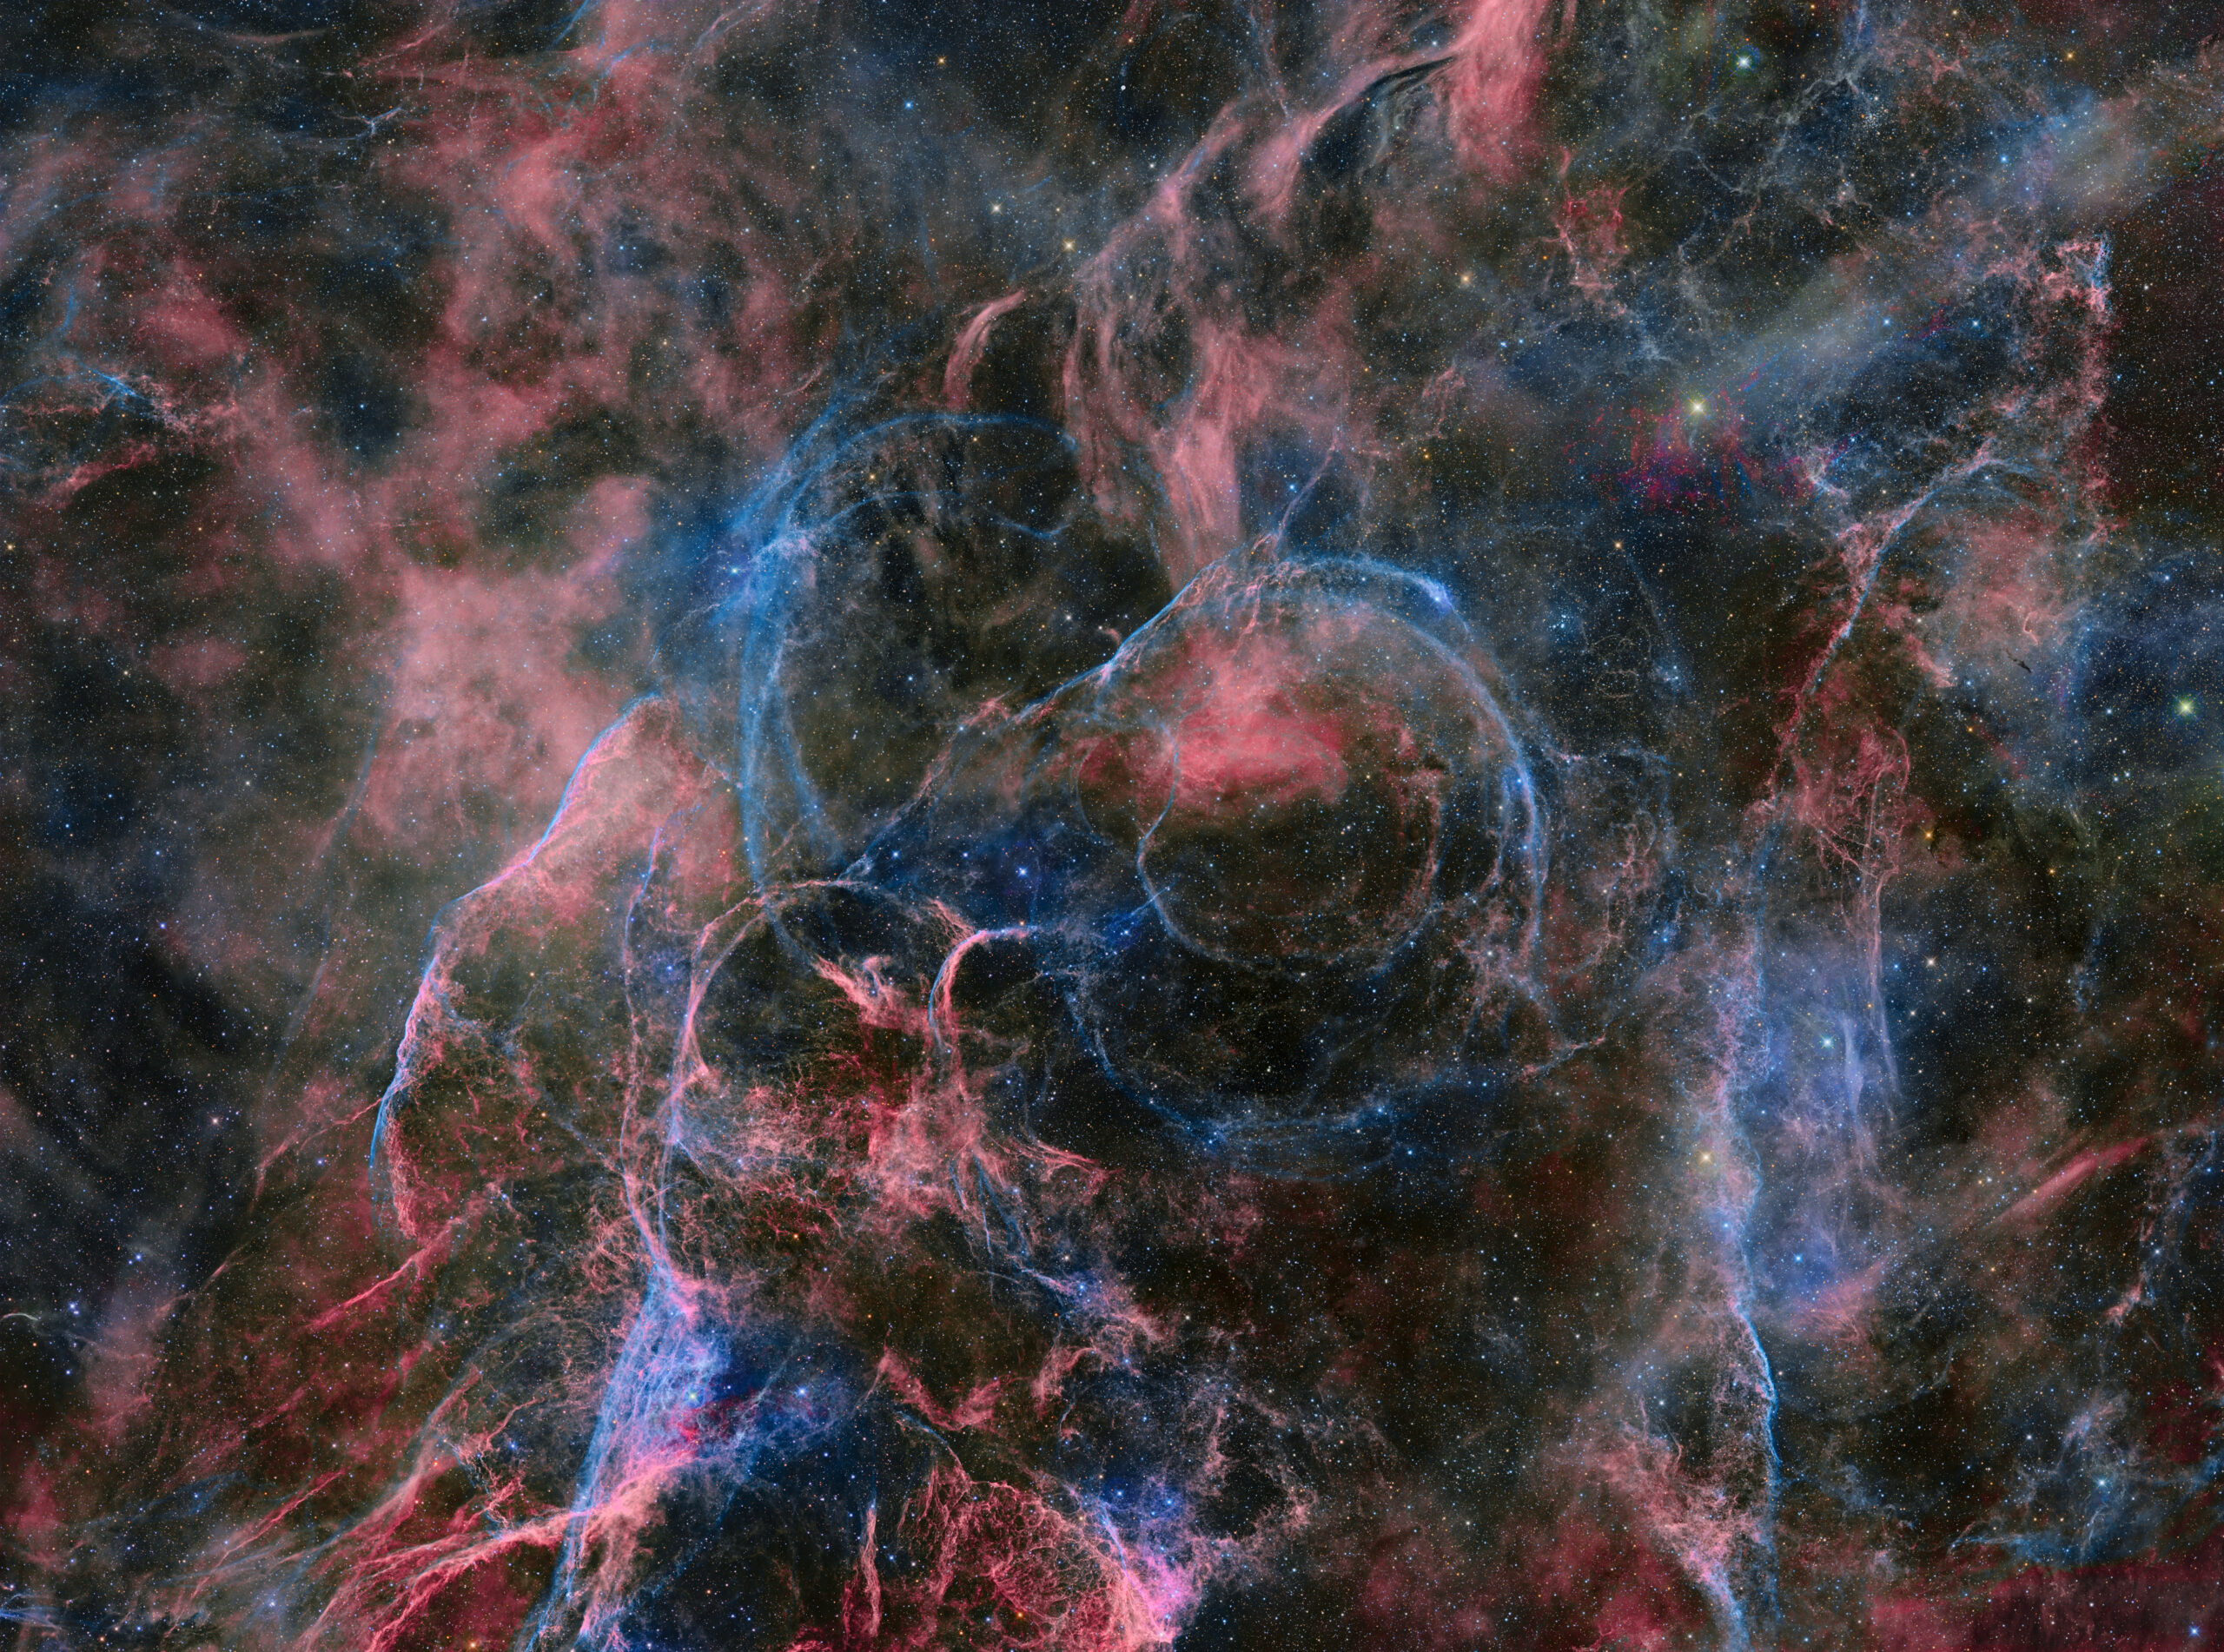 The Vela Supernova remnant